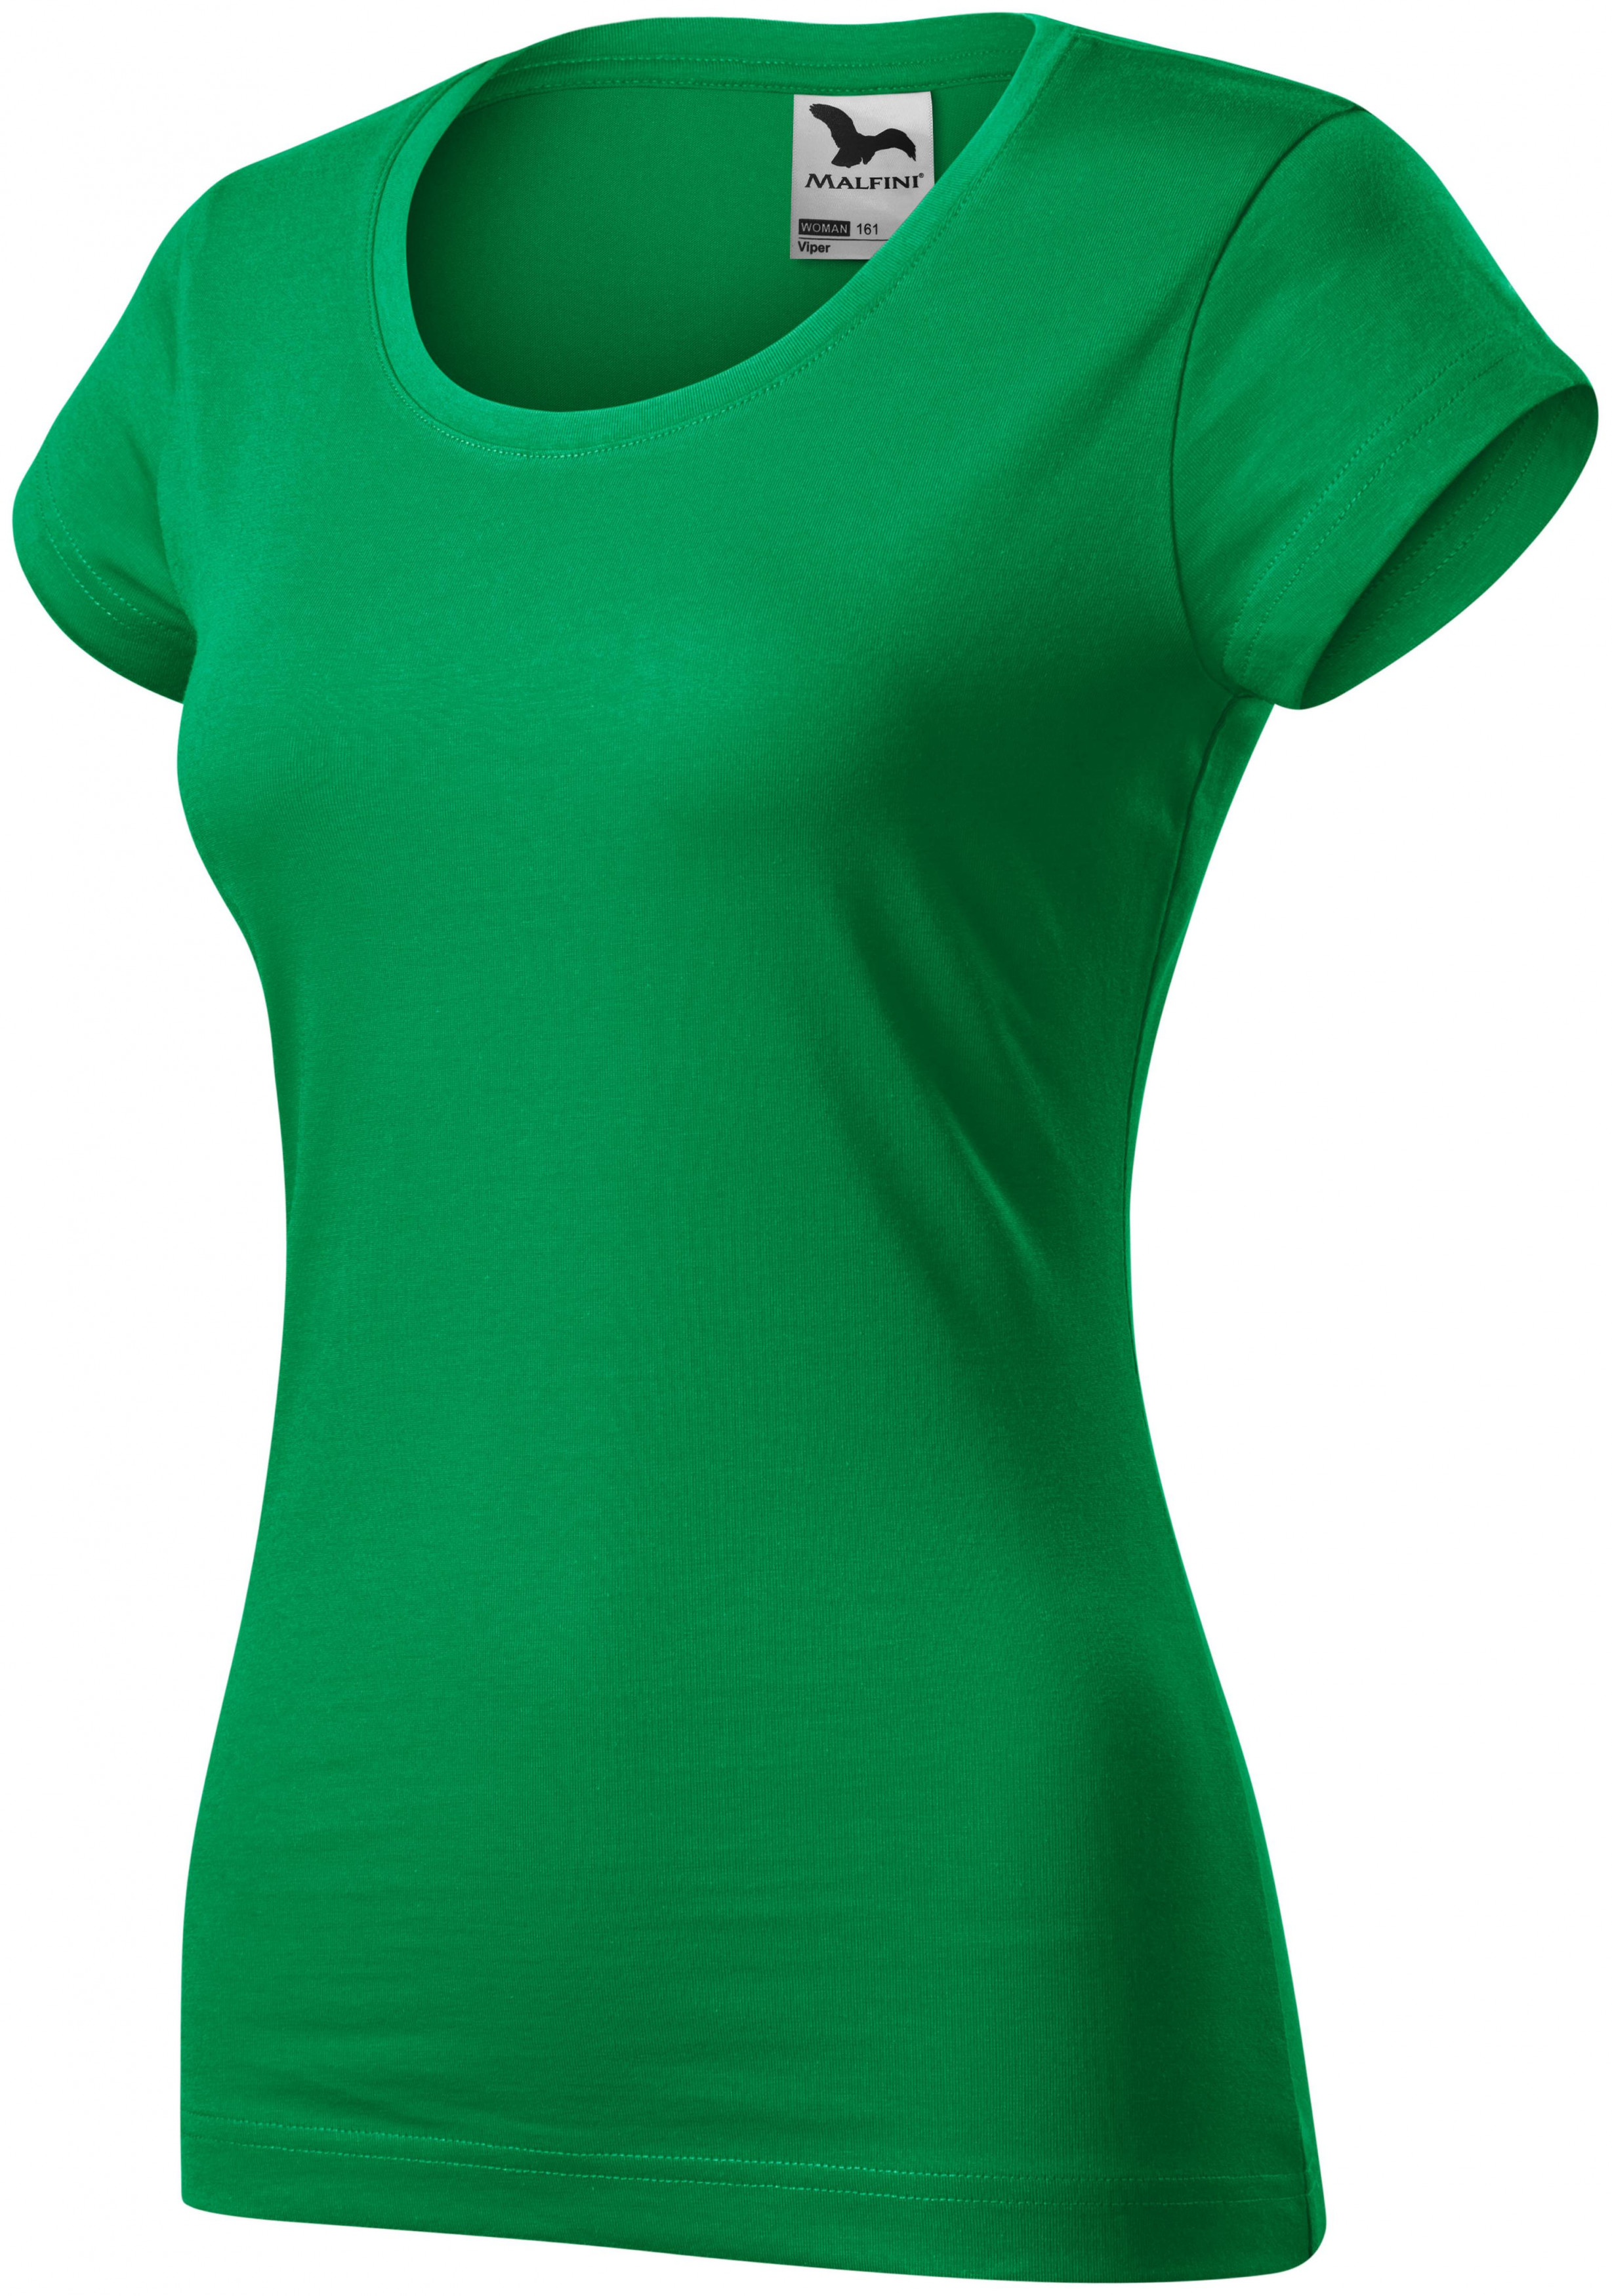 Dámske tričko zúžené s okrúhlym výstrihom, trávová zelená, M